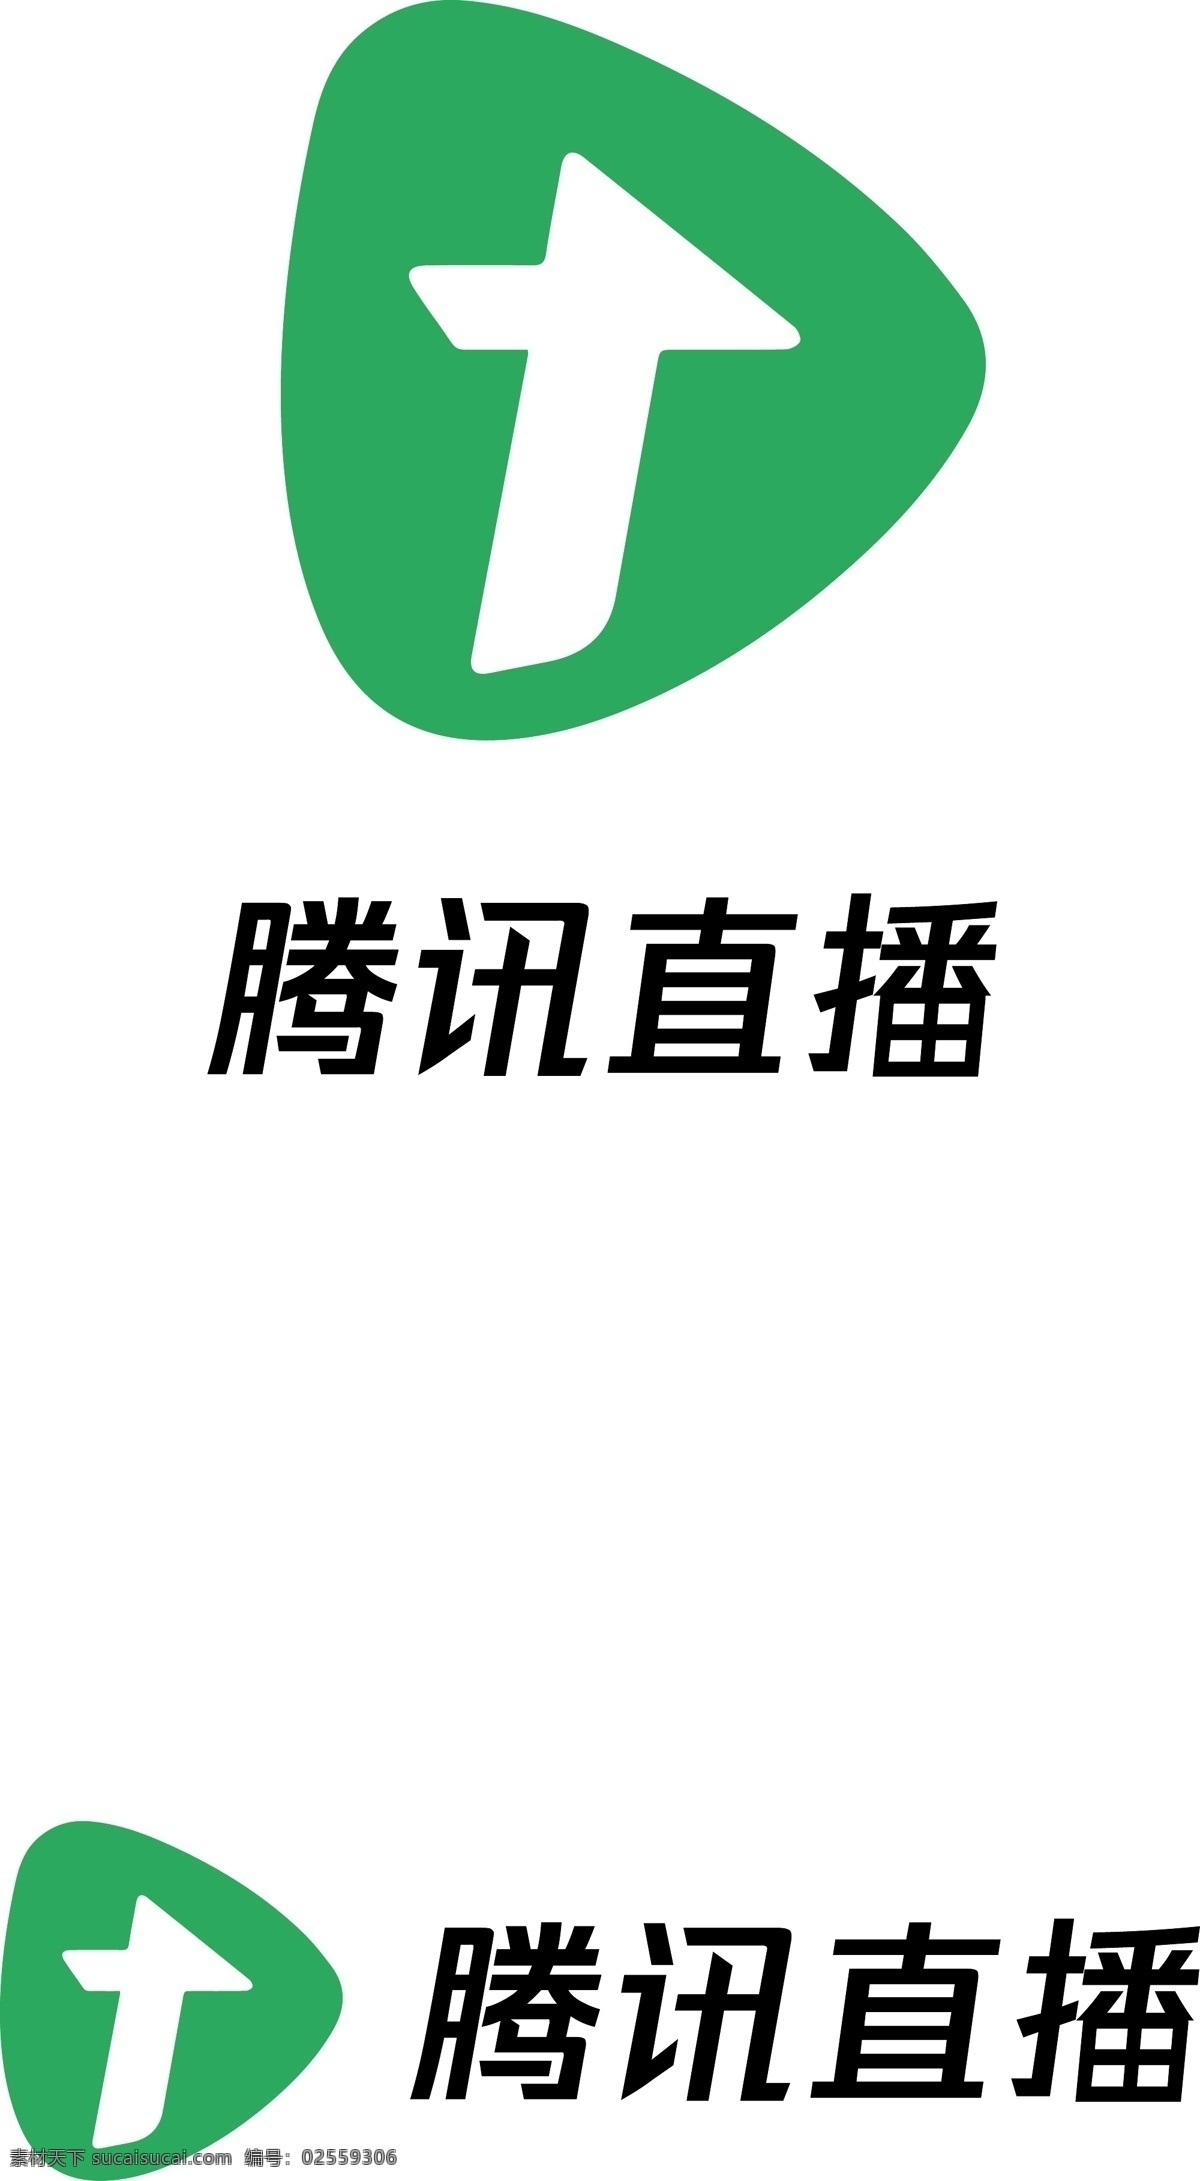 腾讯 直播 logo app 标志 标志图标 企业